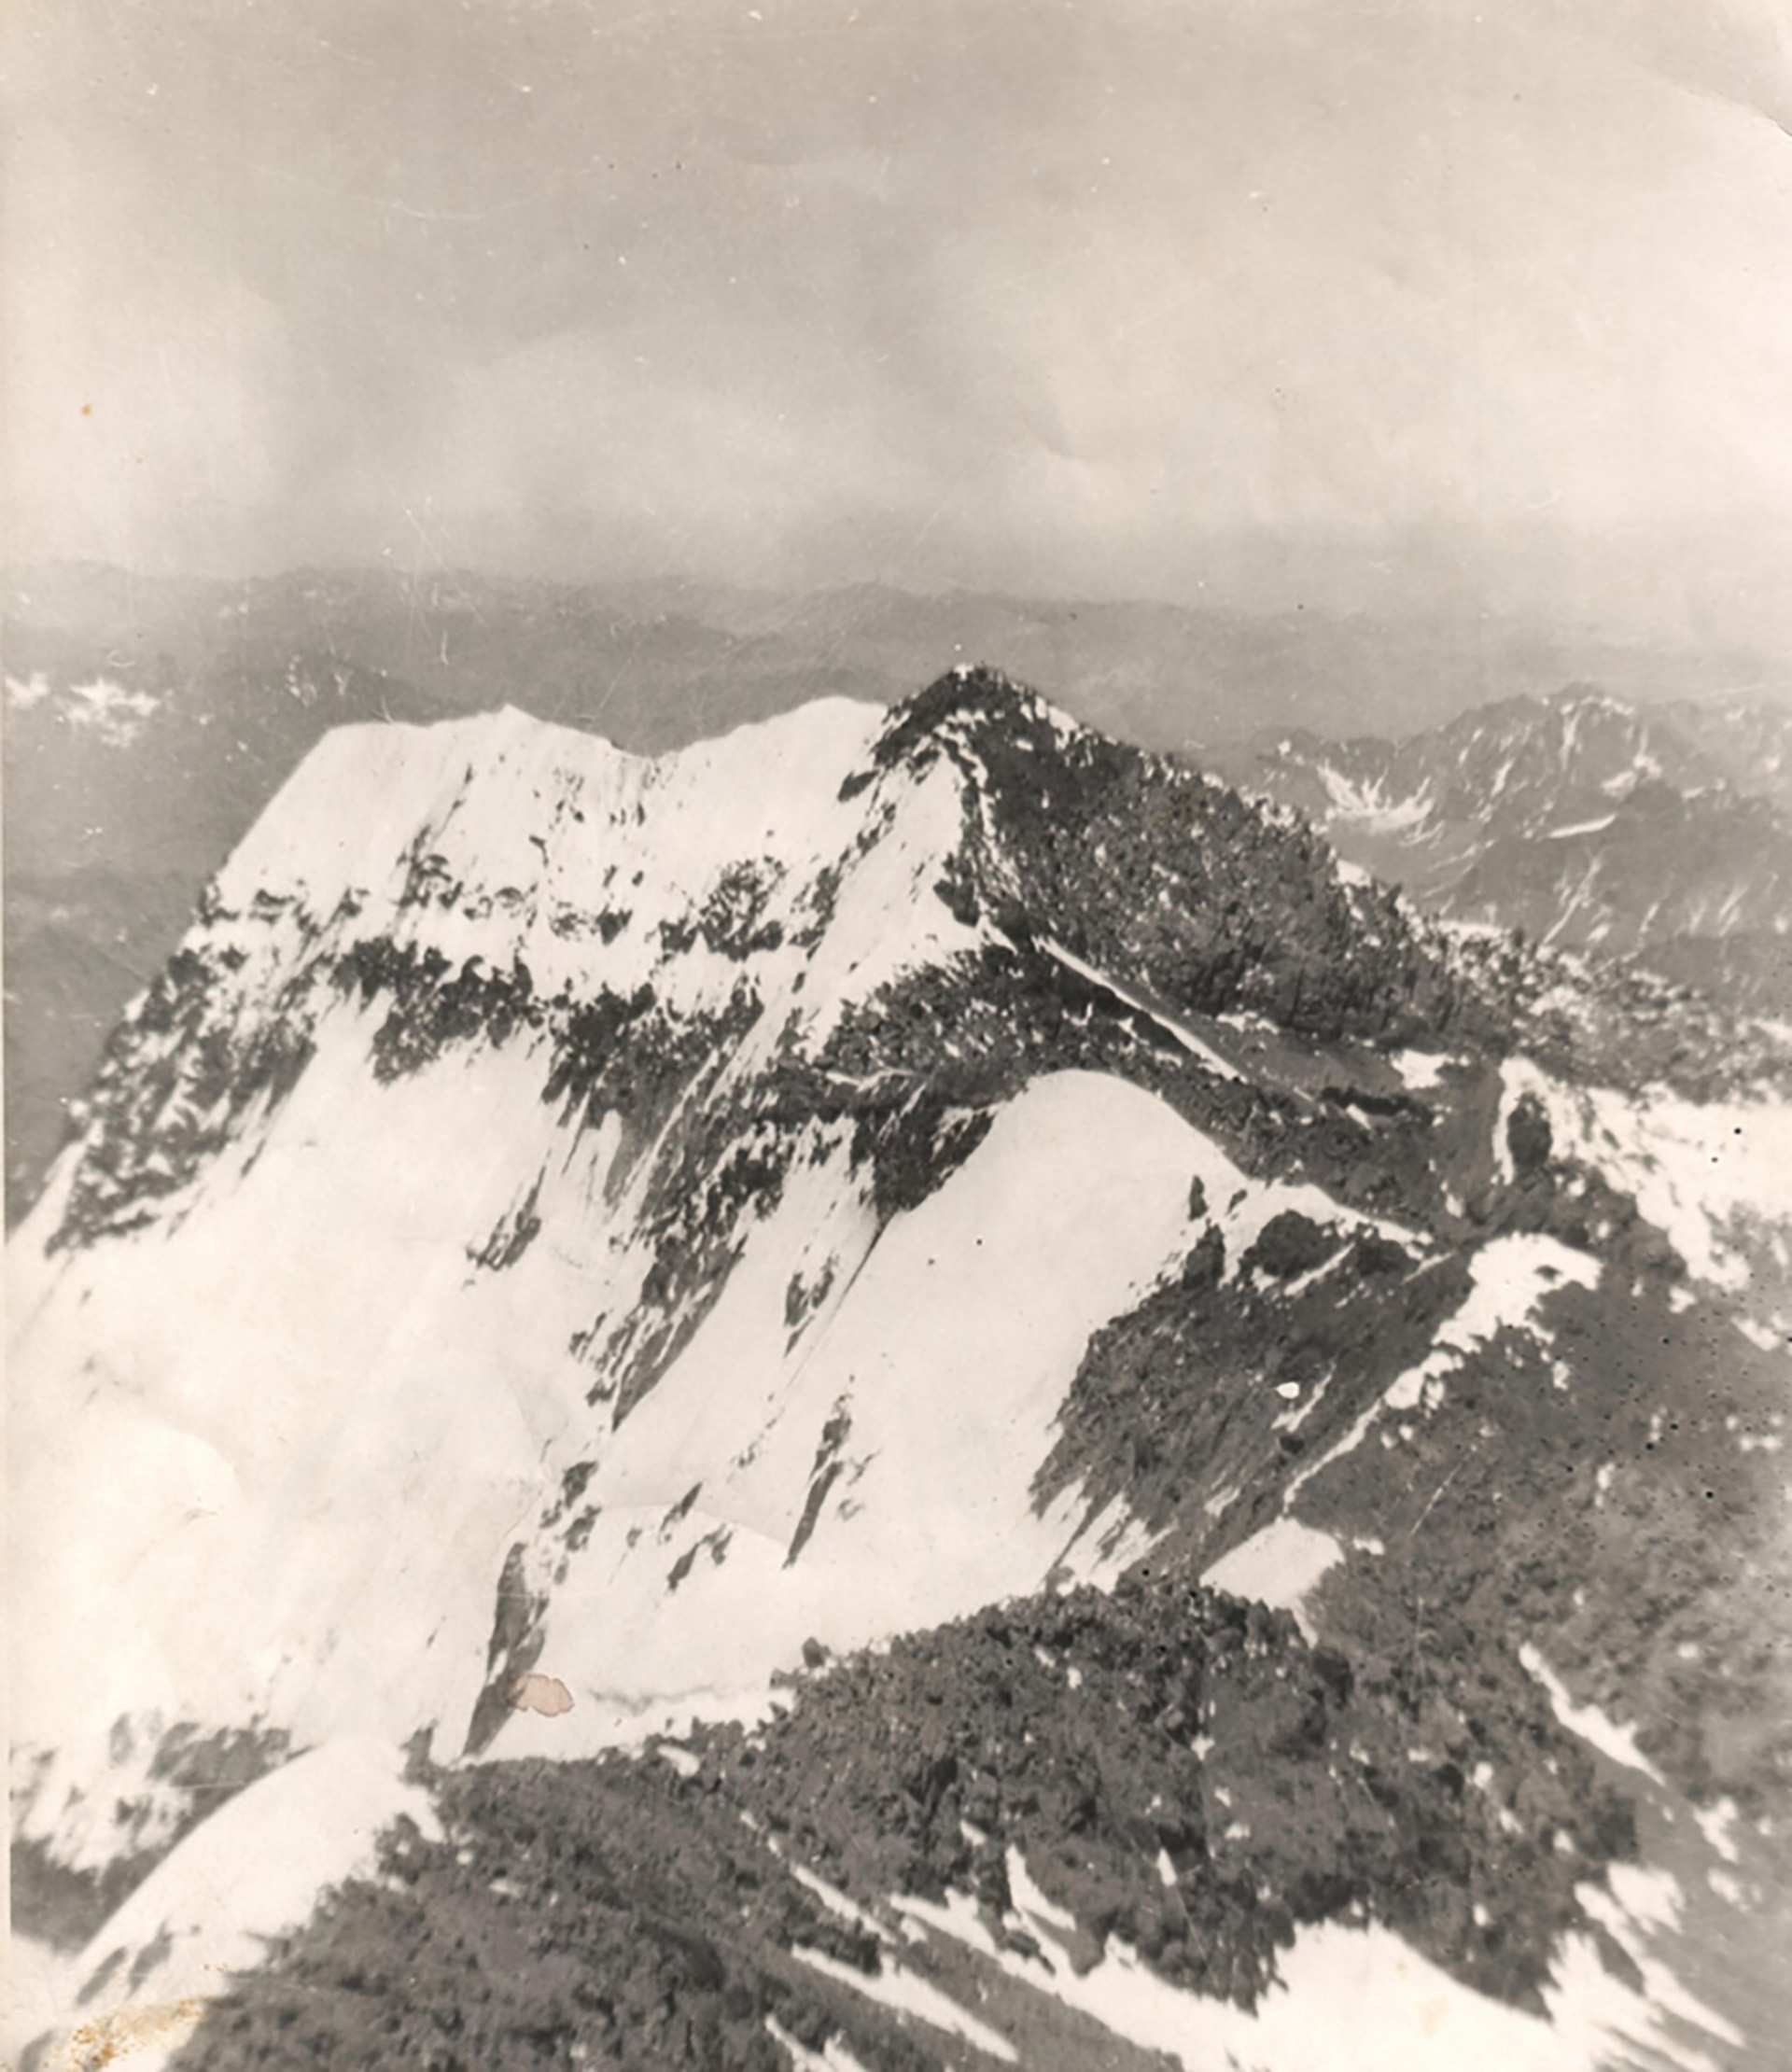 La cima del Aconcagua se ubica a 6962 metros de altura: Nelly Noller la alcanzó en 1952 y 1955